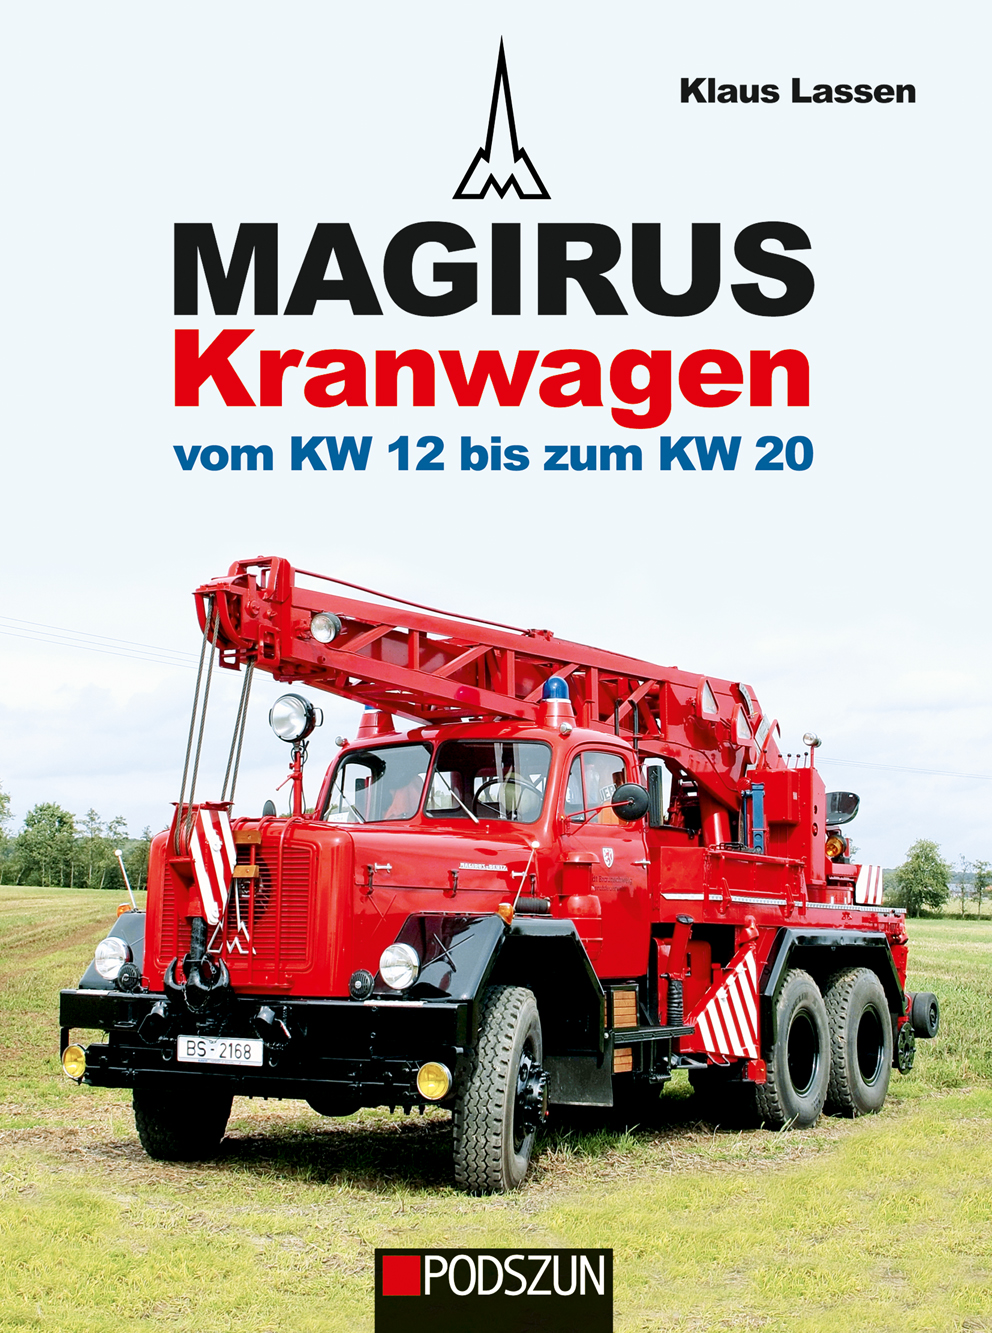 Magirus Kranwagen vom KW 12 bis zum KW 20